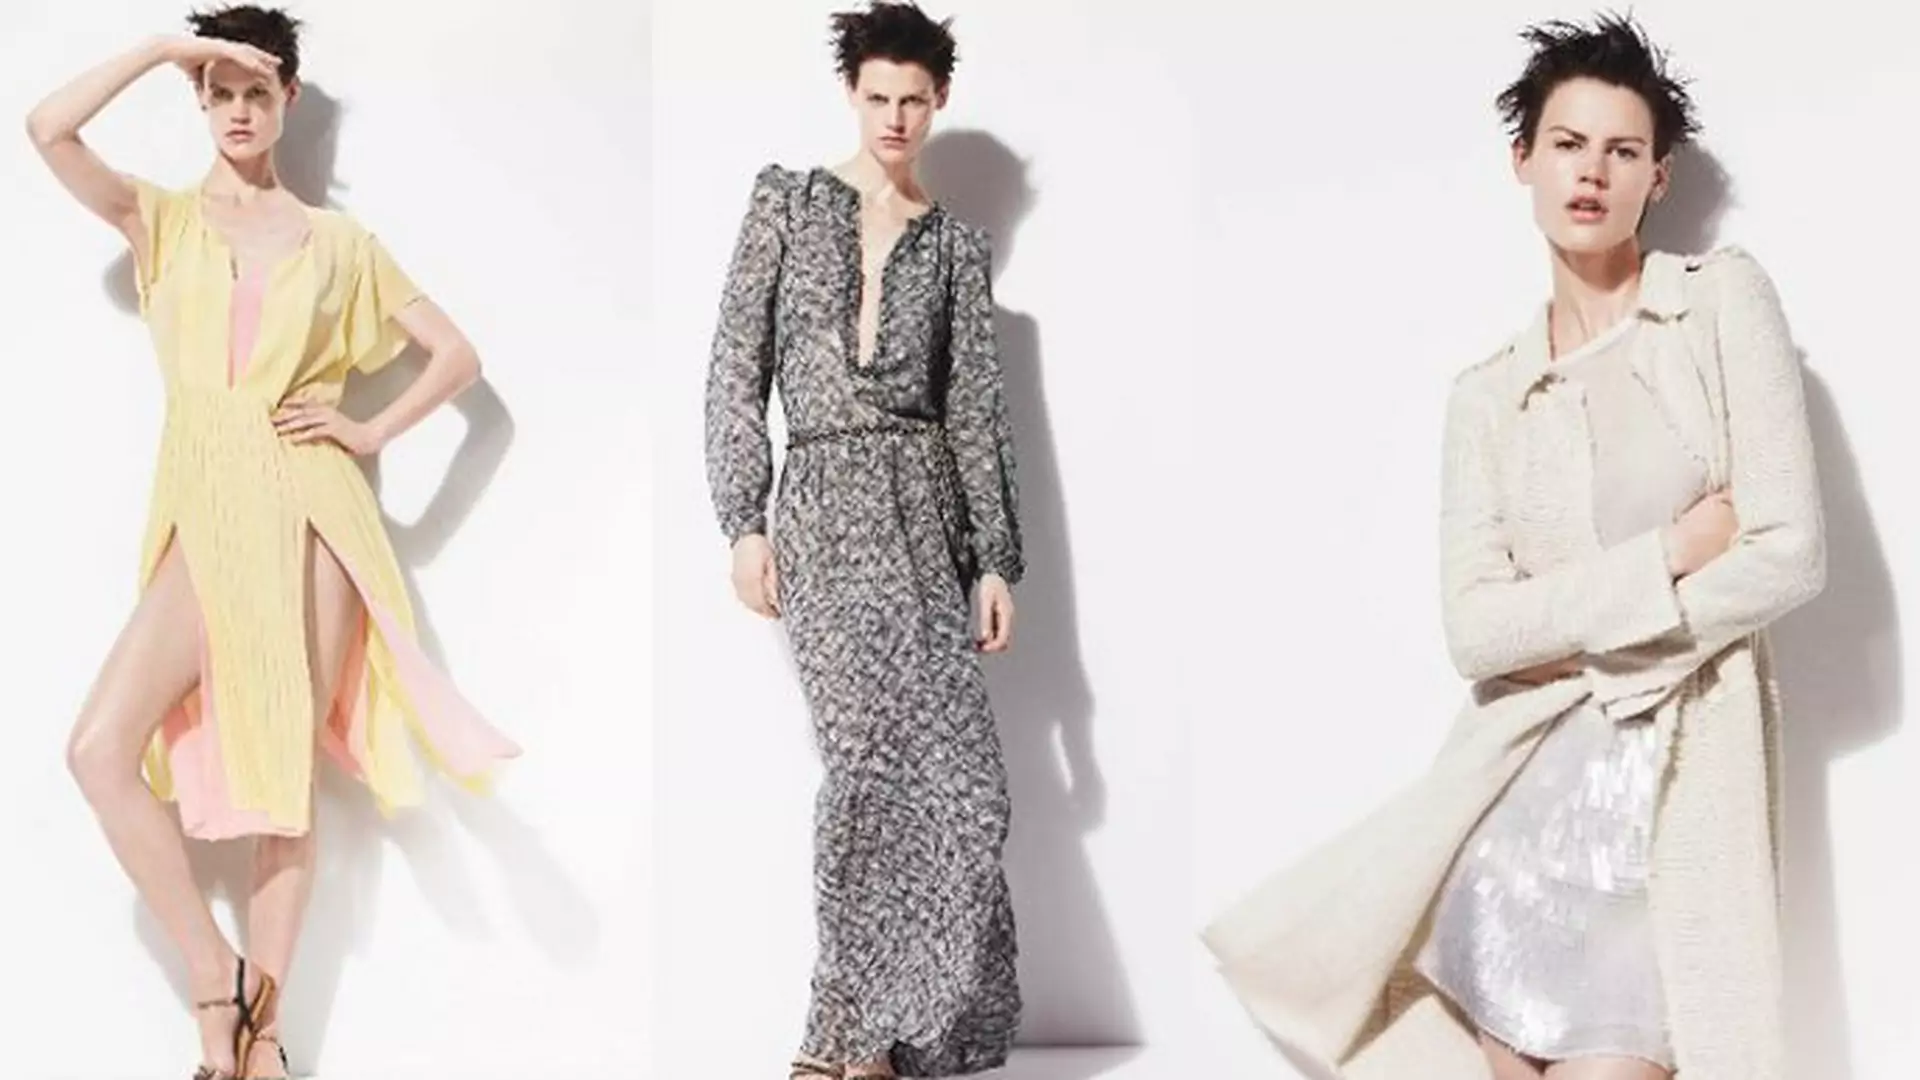 Romantycznie i ze smakiem - wiosenne sukienki Zara 2012